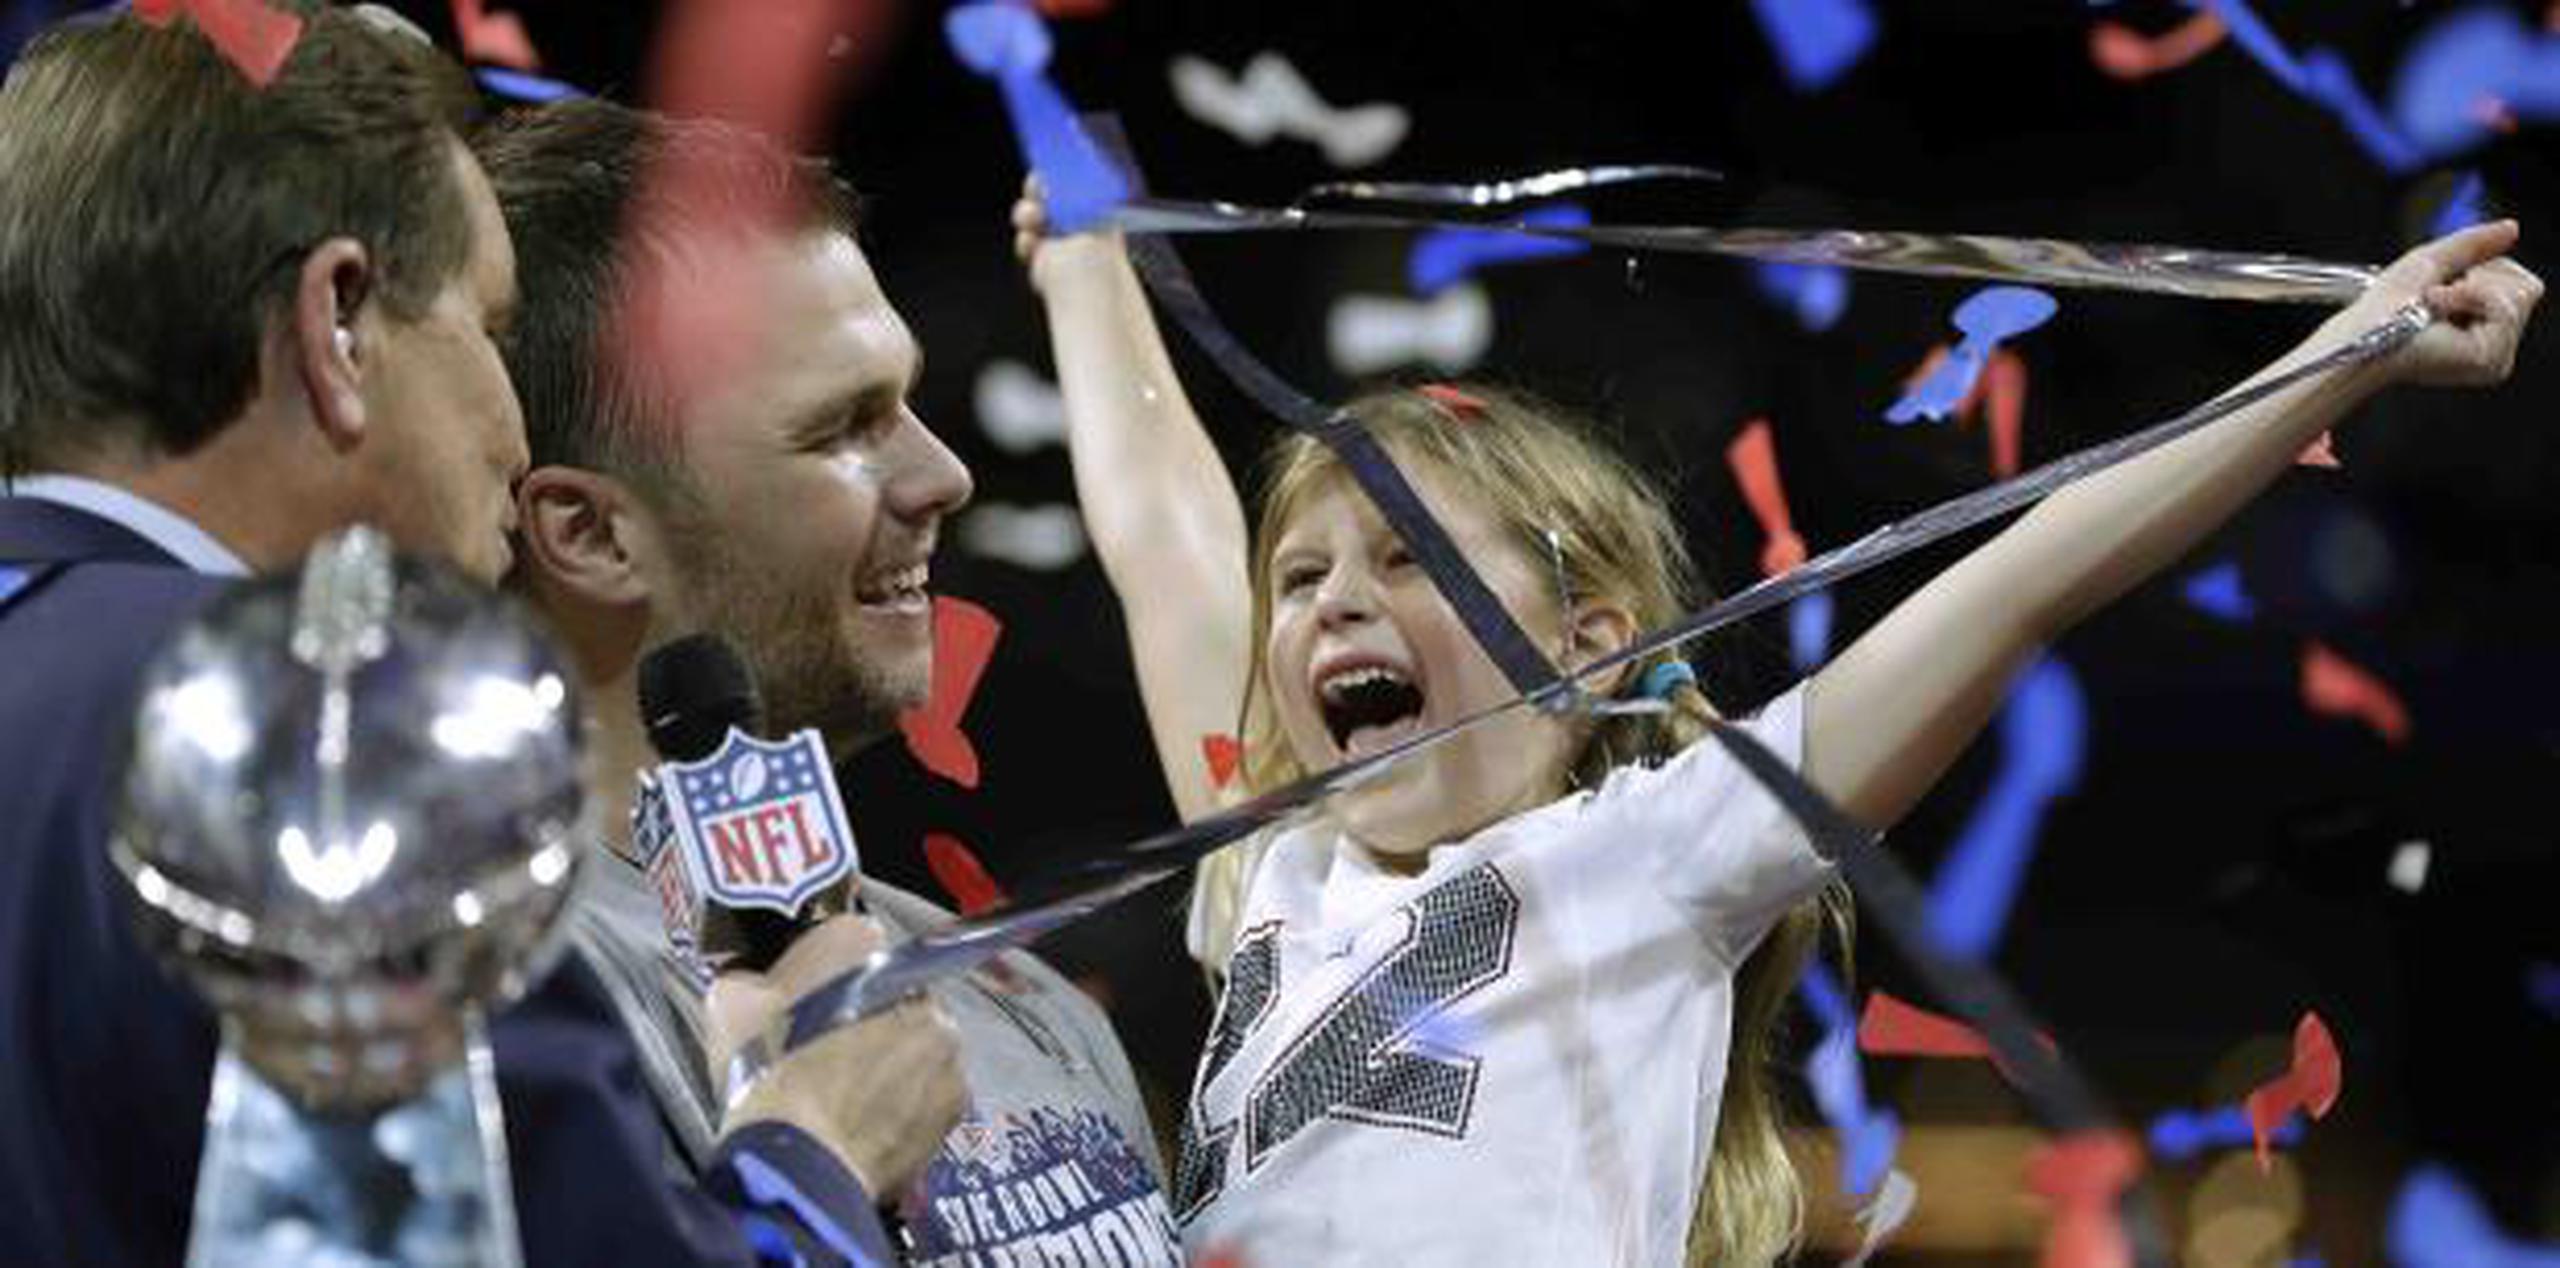 Tom Brady celebró el domingo la conquista de su sexto Super Bowl junto a su familia, en especial su hija Vivian, con quien aparece en la foto sobre la tarima de premiación. (AP / David J. Phillip)